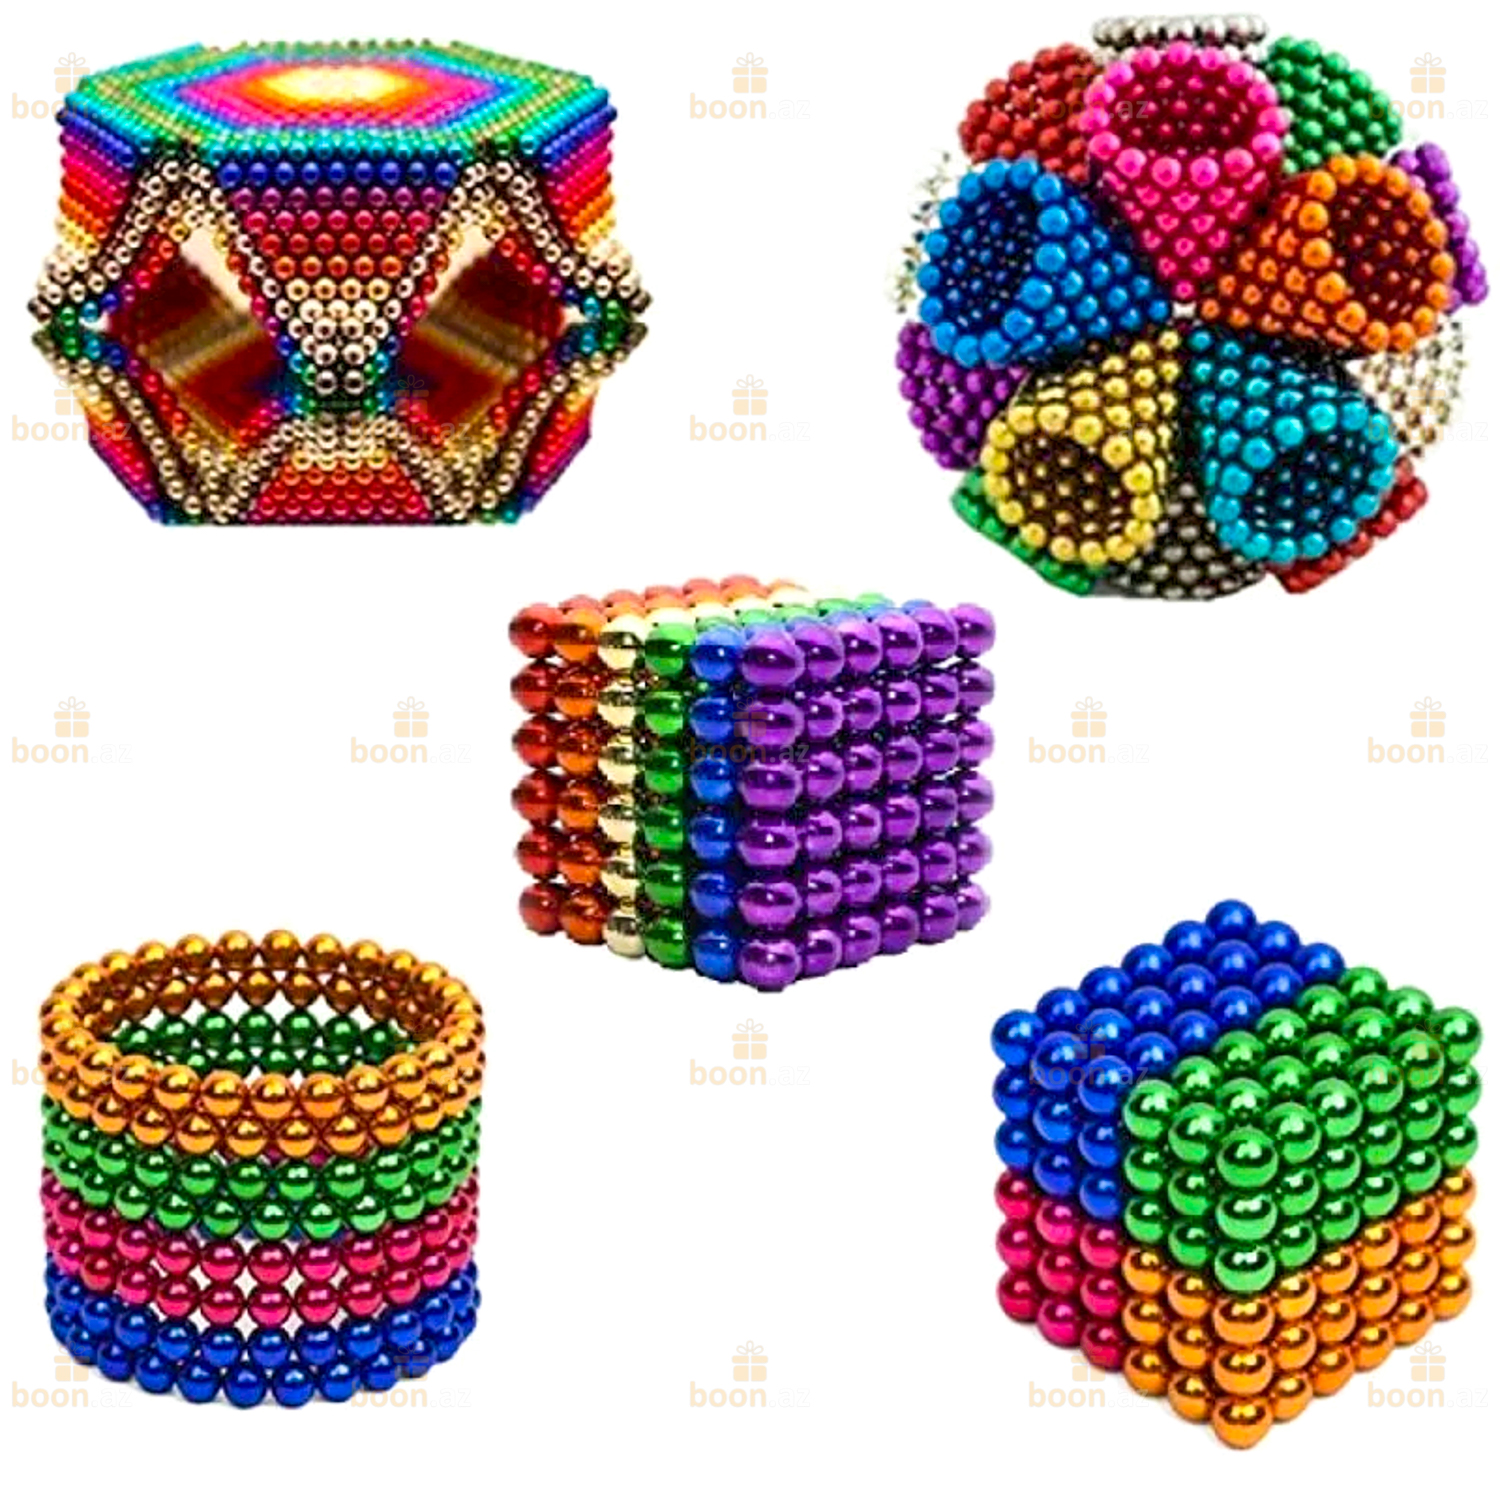 Конструктор в шаре. Магнитный конструктор Neocube. Магнитный конструктор Неокуб 216 шариков 5 мм Neocube. Неокуб Neocube куб из магнитных 216 шариков 5мм разноцветный. Магнитный конструктор Neocube бирюзовый 7538 64 5мм.